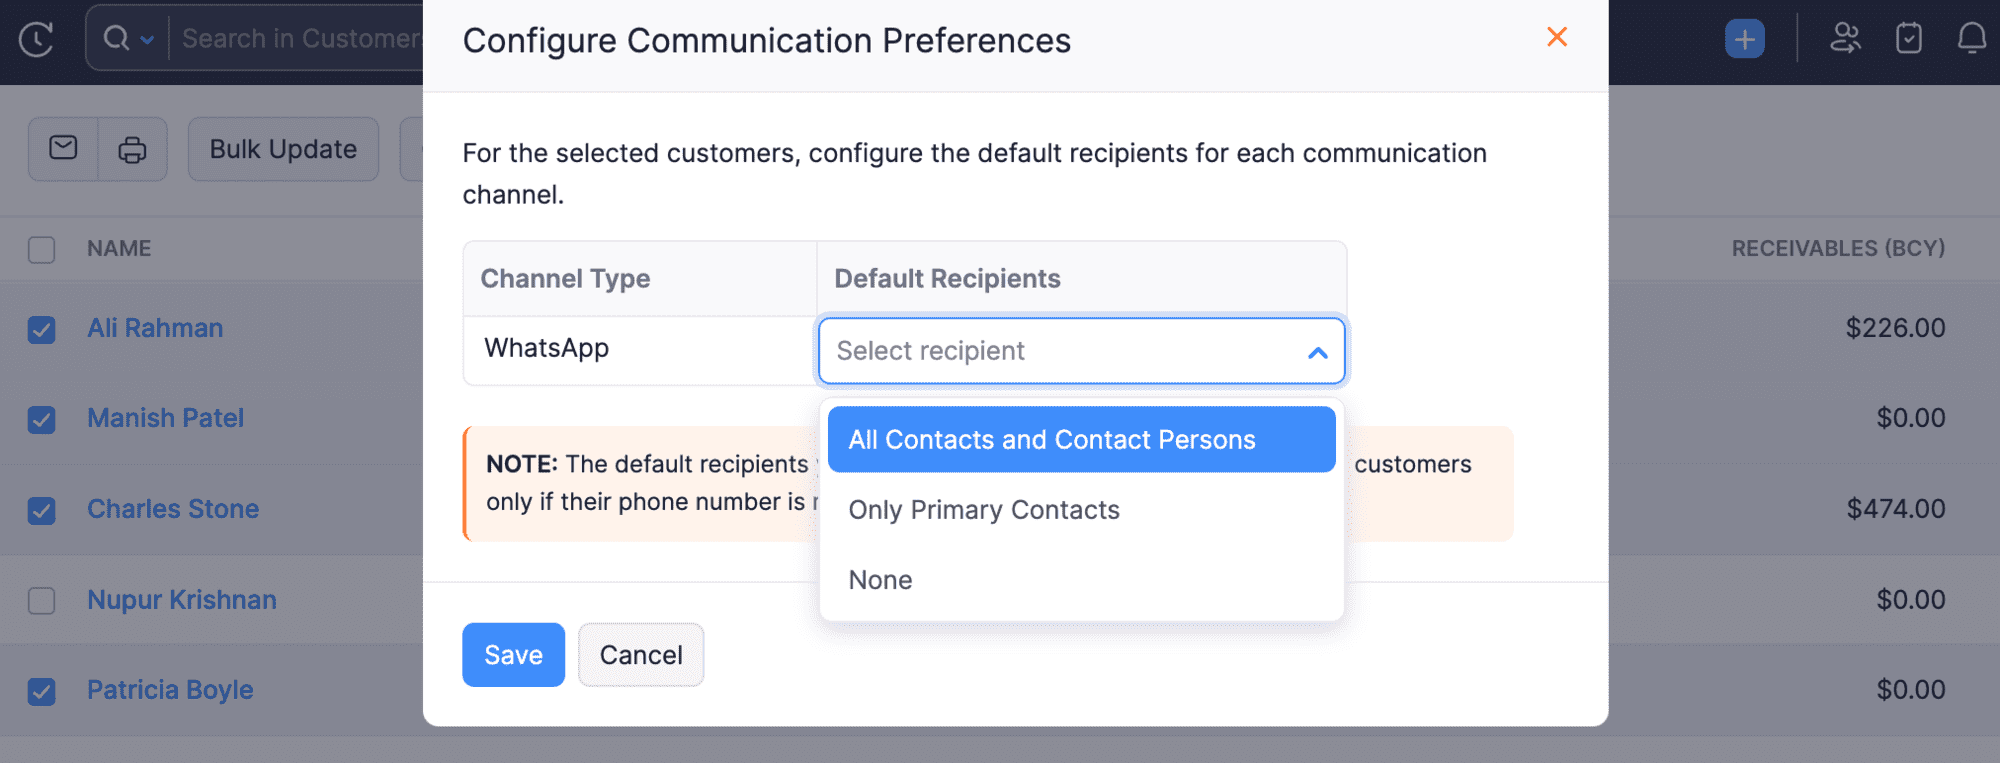 Configure Communication Preferences Popup